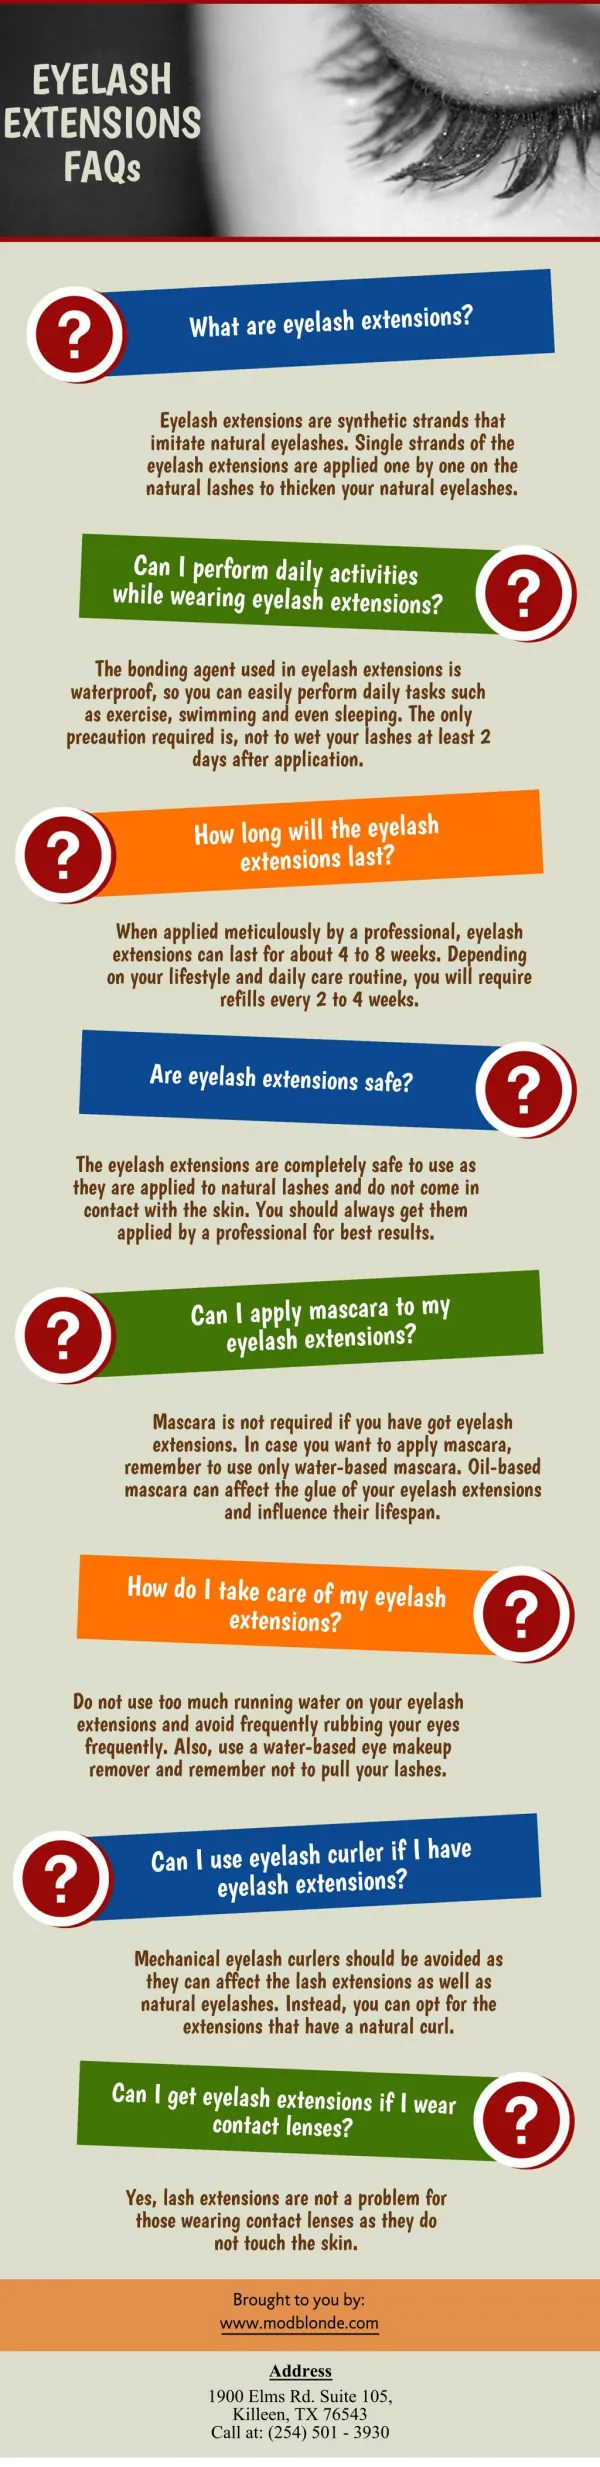 Eyelash Extensions FAQs